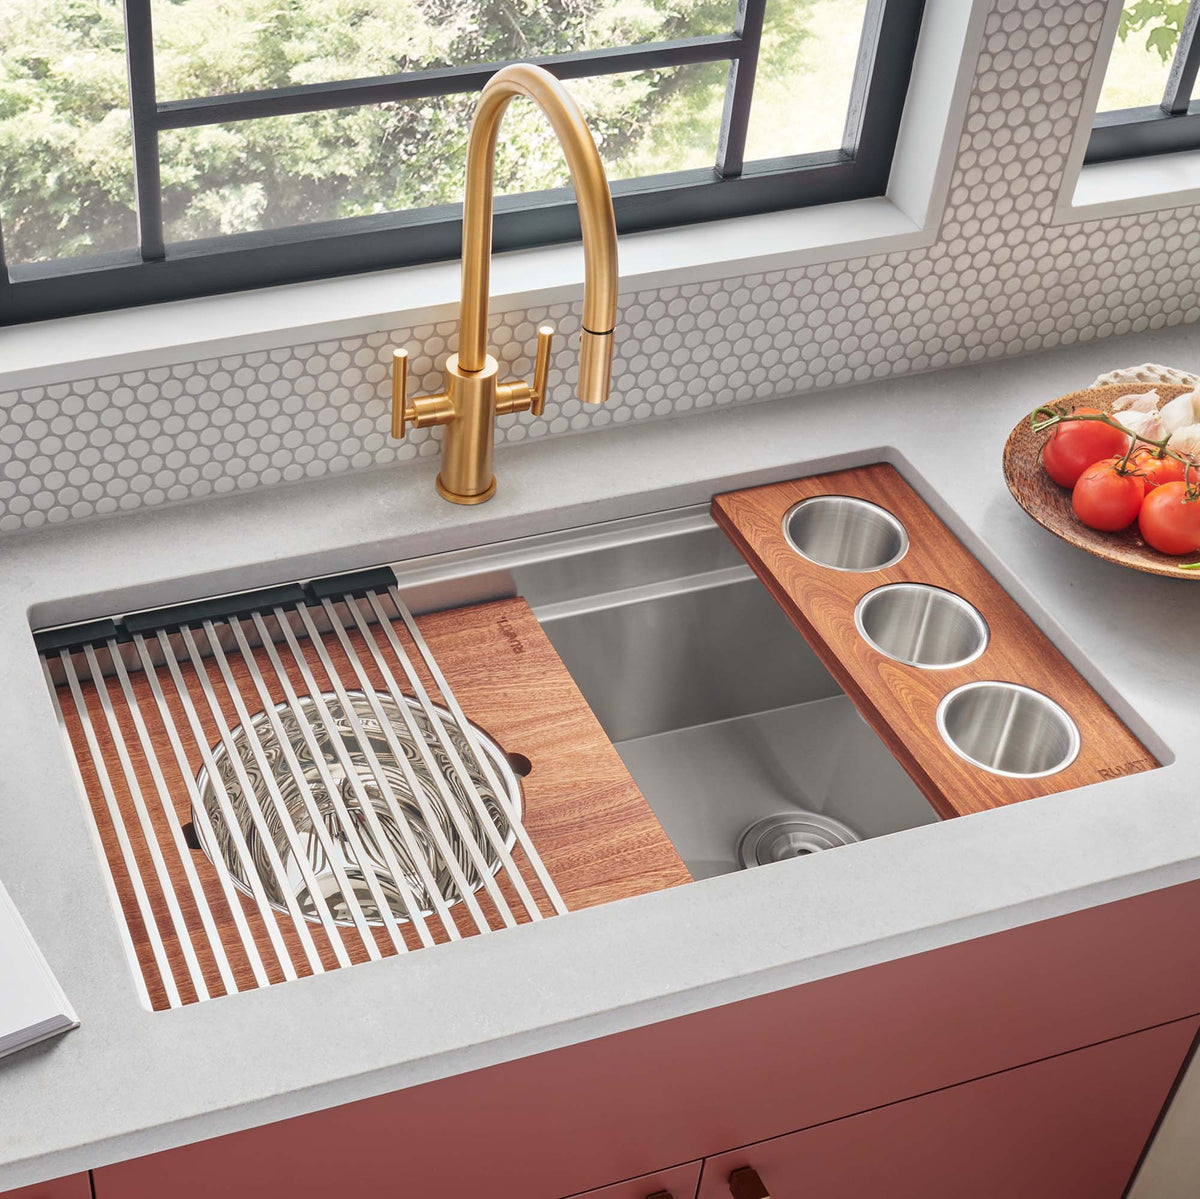 RUVATI RVH8299 39-inch Workstation Dual Tier Kitchen Sink Undermount